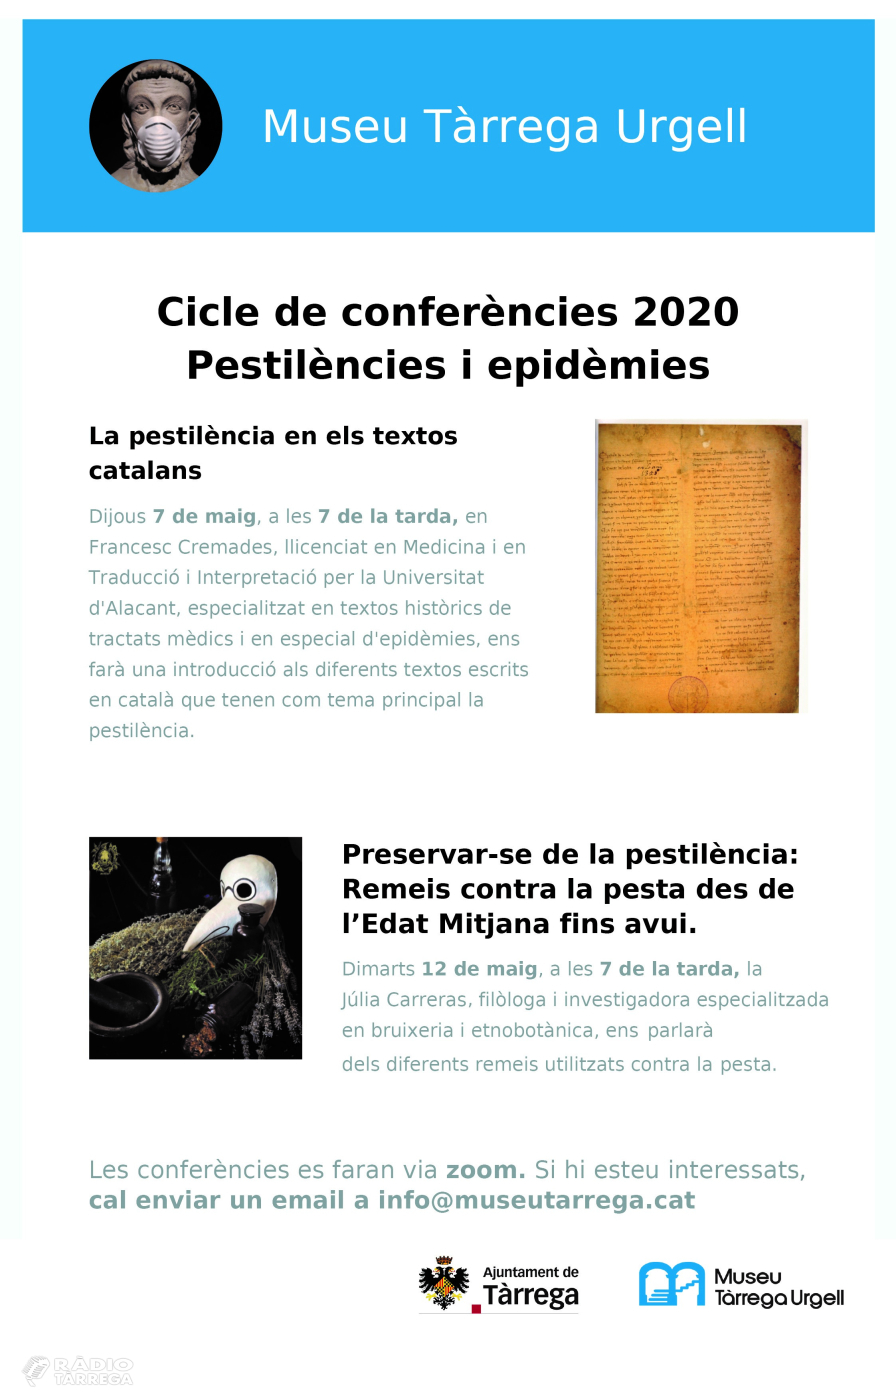 ACTUALITZACIÓ: El Museu Tàrrega Urgell oferirà per via telemàtica un programa de conferències sobre la pandèmia de la pesta a l’Edat Mitjana